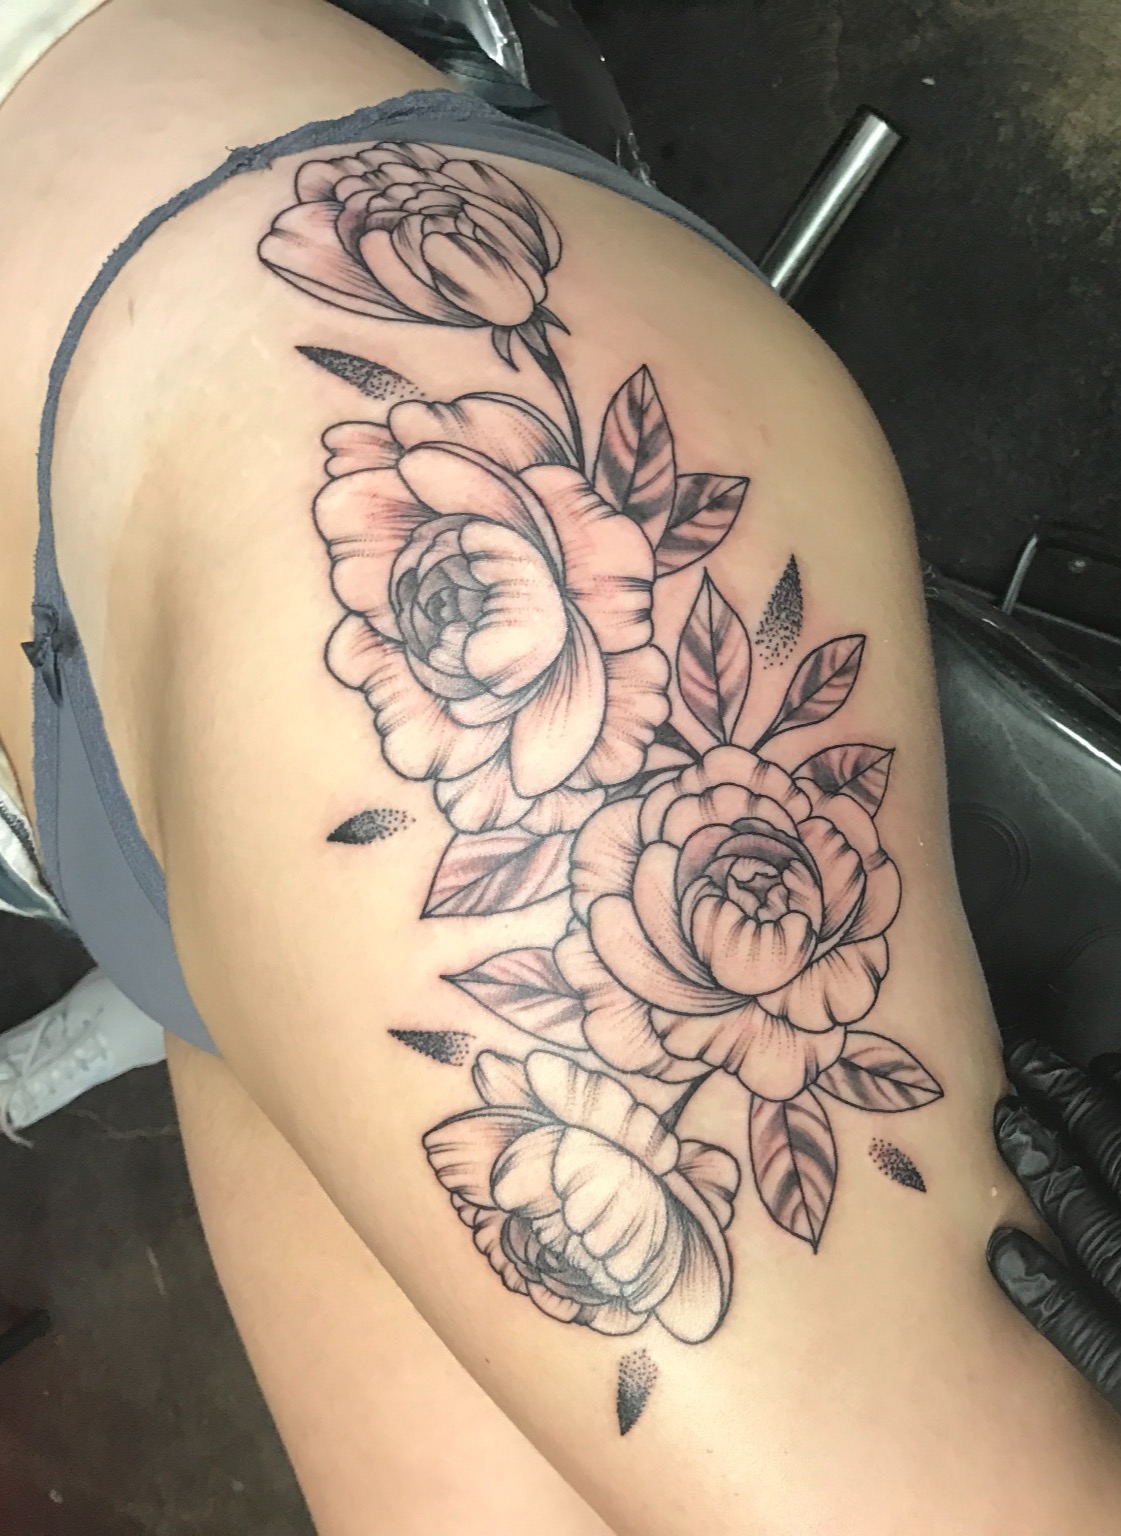 flower tattoo, Johnny calico, girls with tattoos, tattoo artist Michigan, Michigan tattooers, line tattoos, black work tattoos